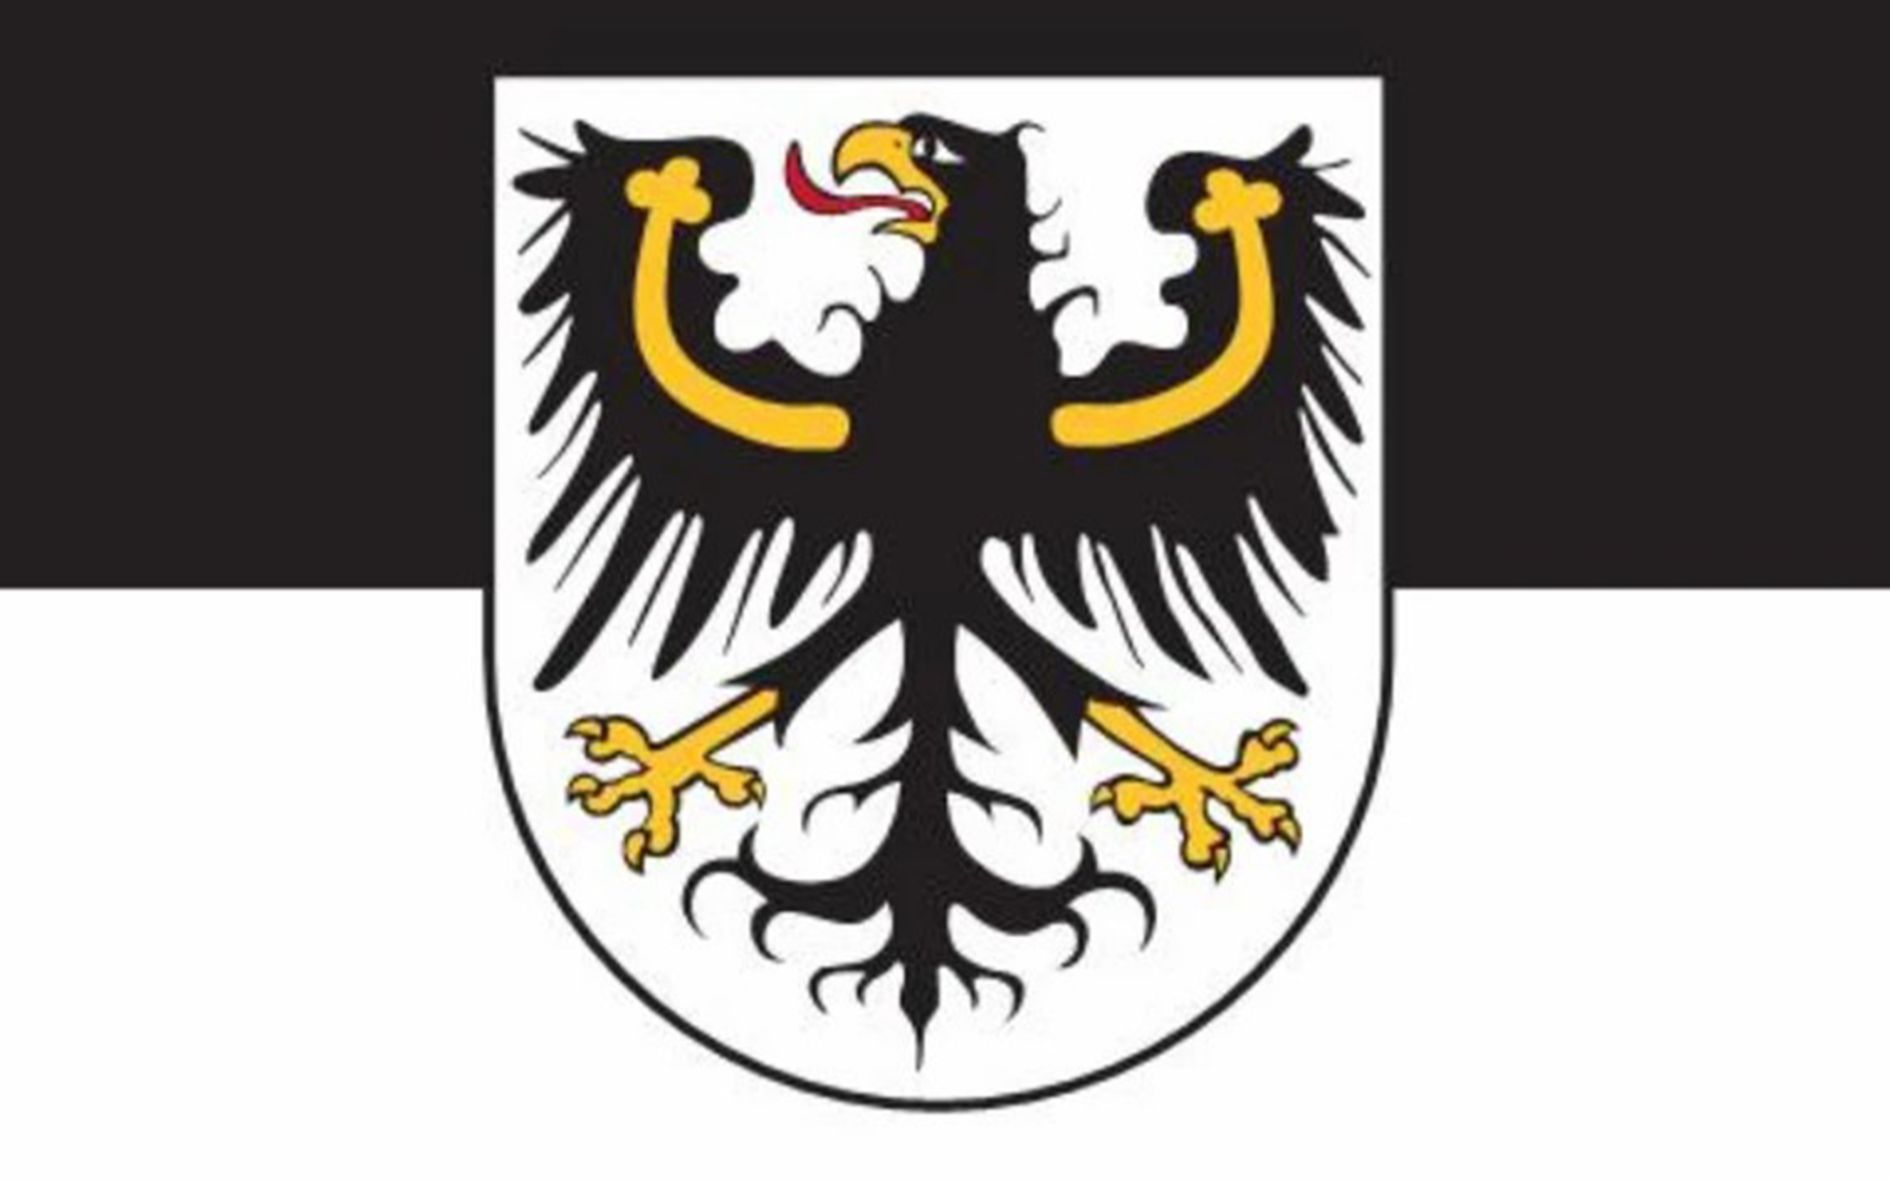 普鲁士王国国徽图片